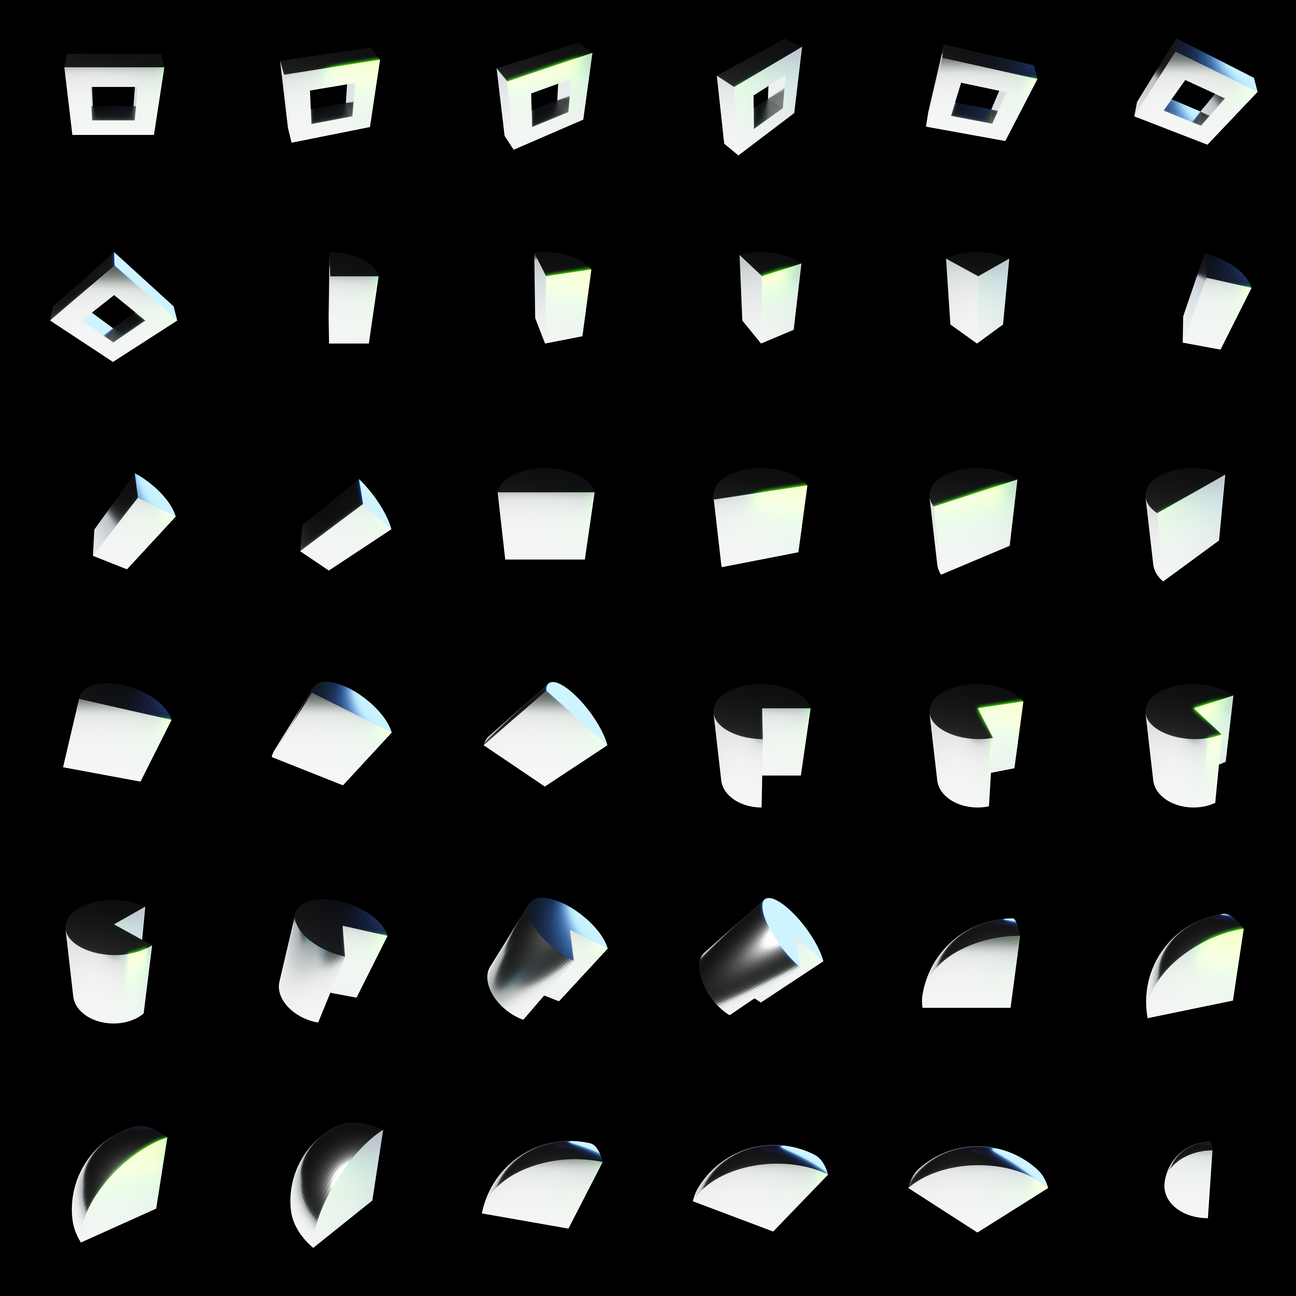 The Bundle - m.chrome/x tile image 1